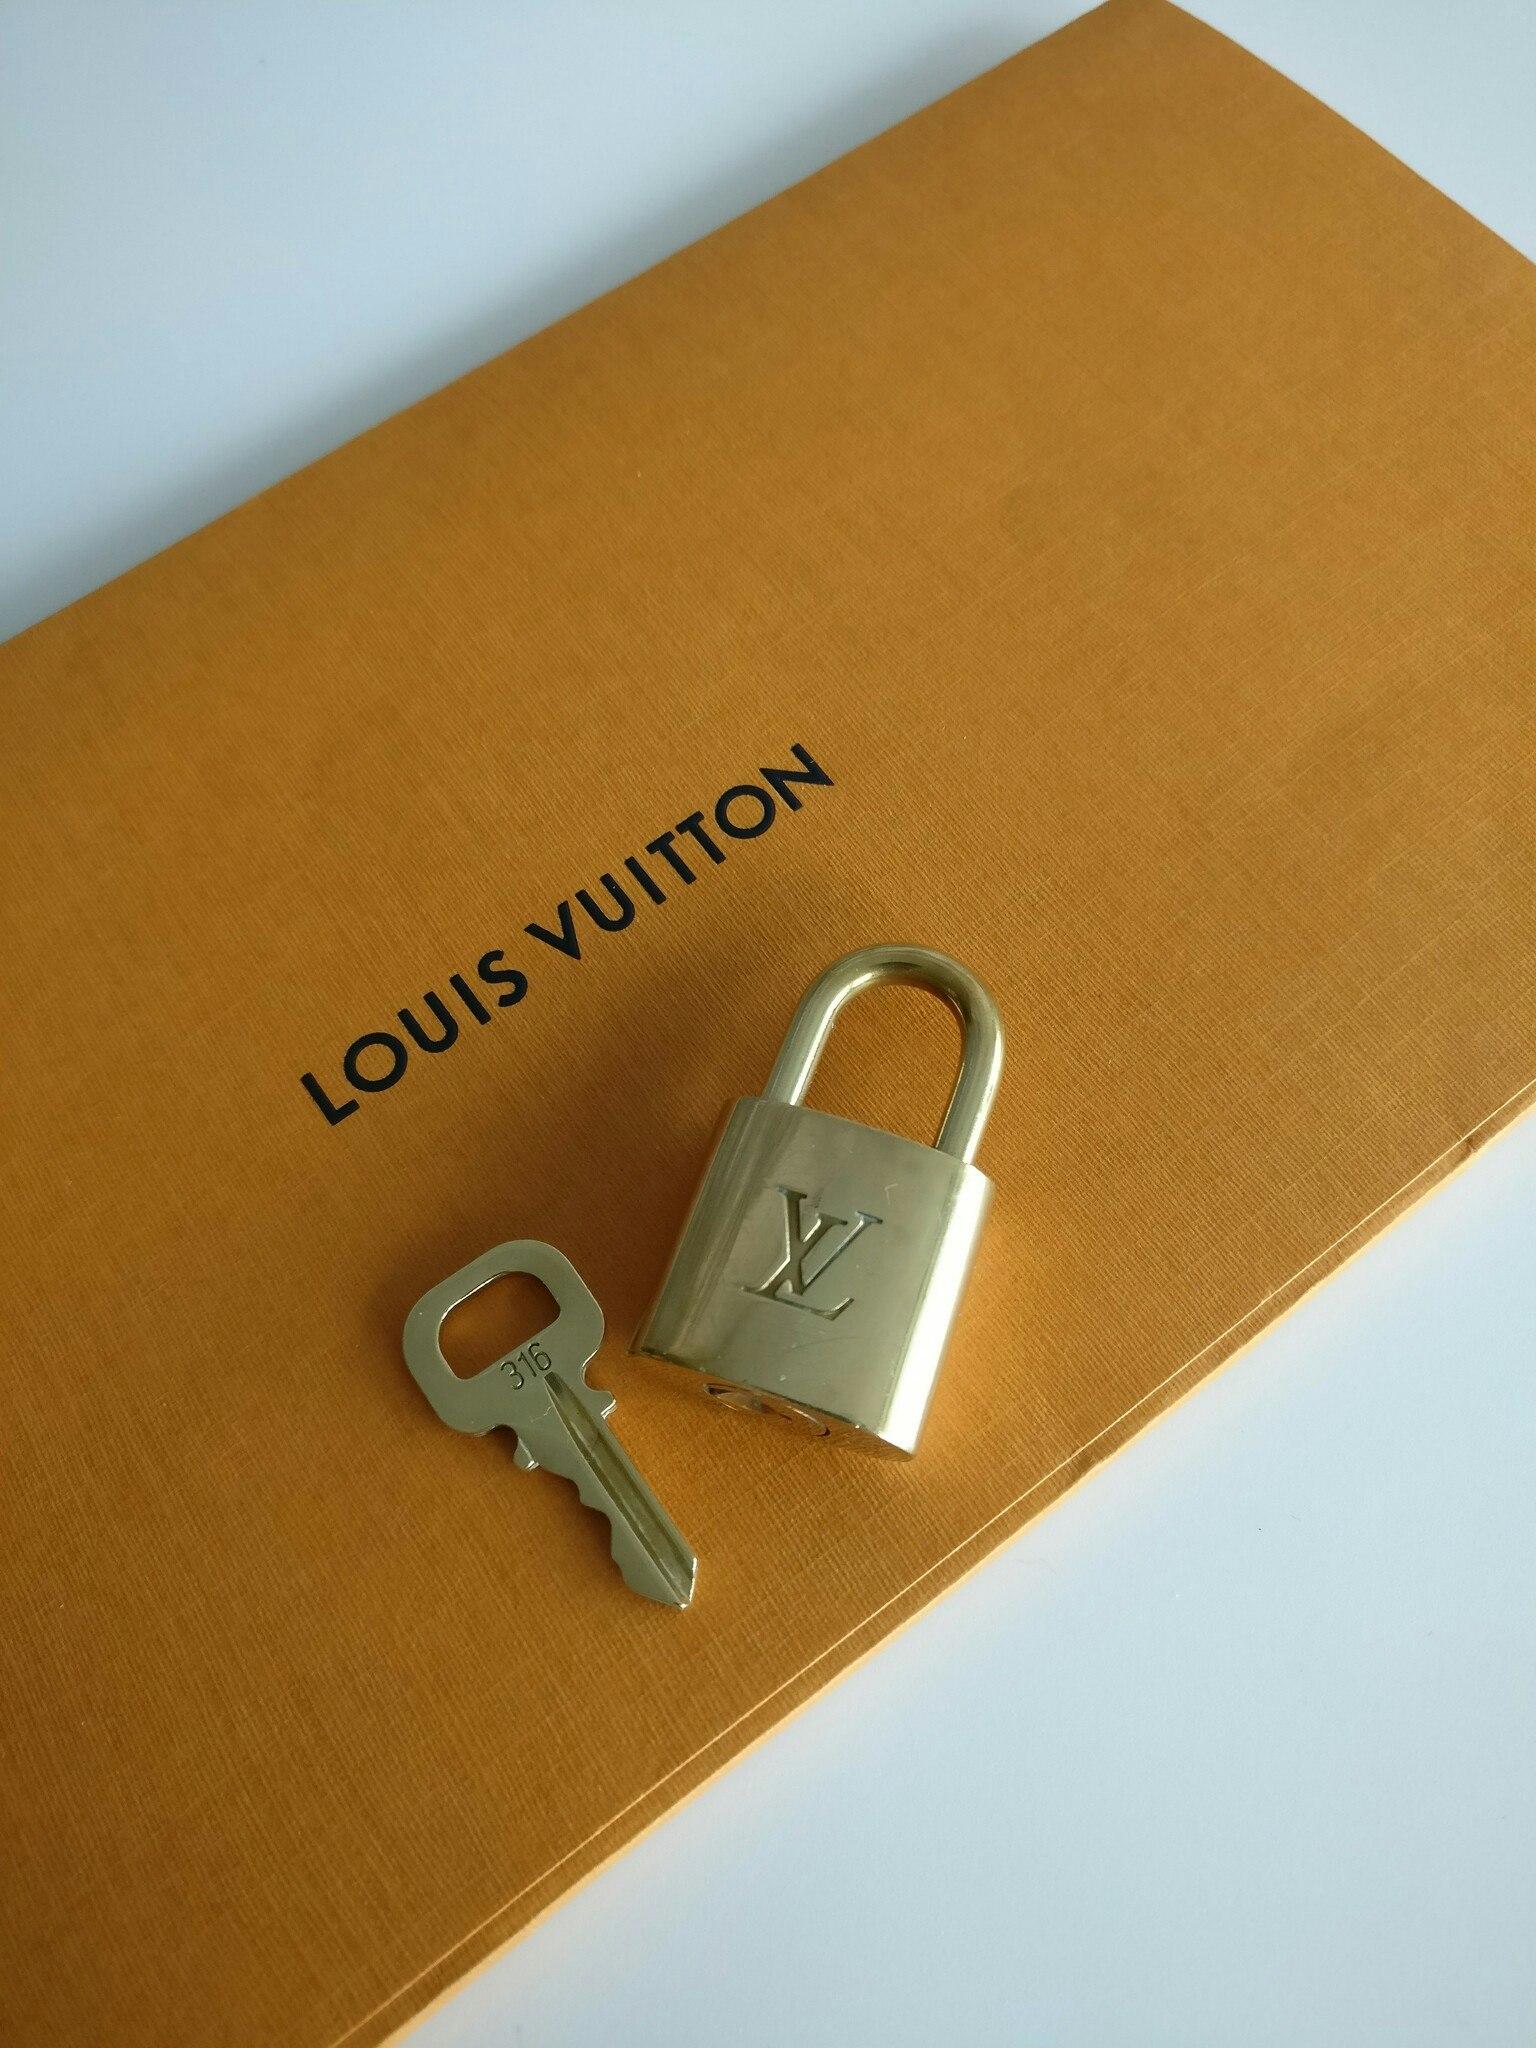 Louis Vuitton Padlock Set 316 